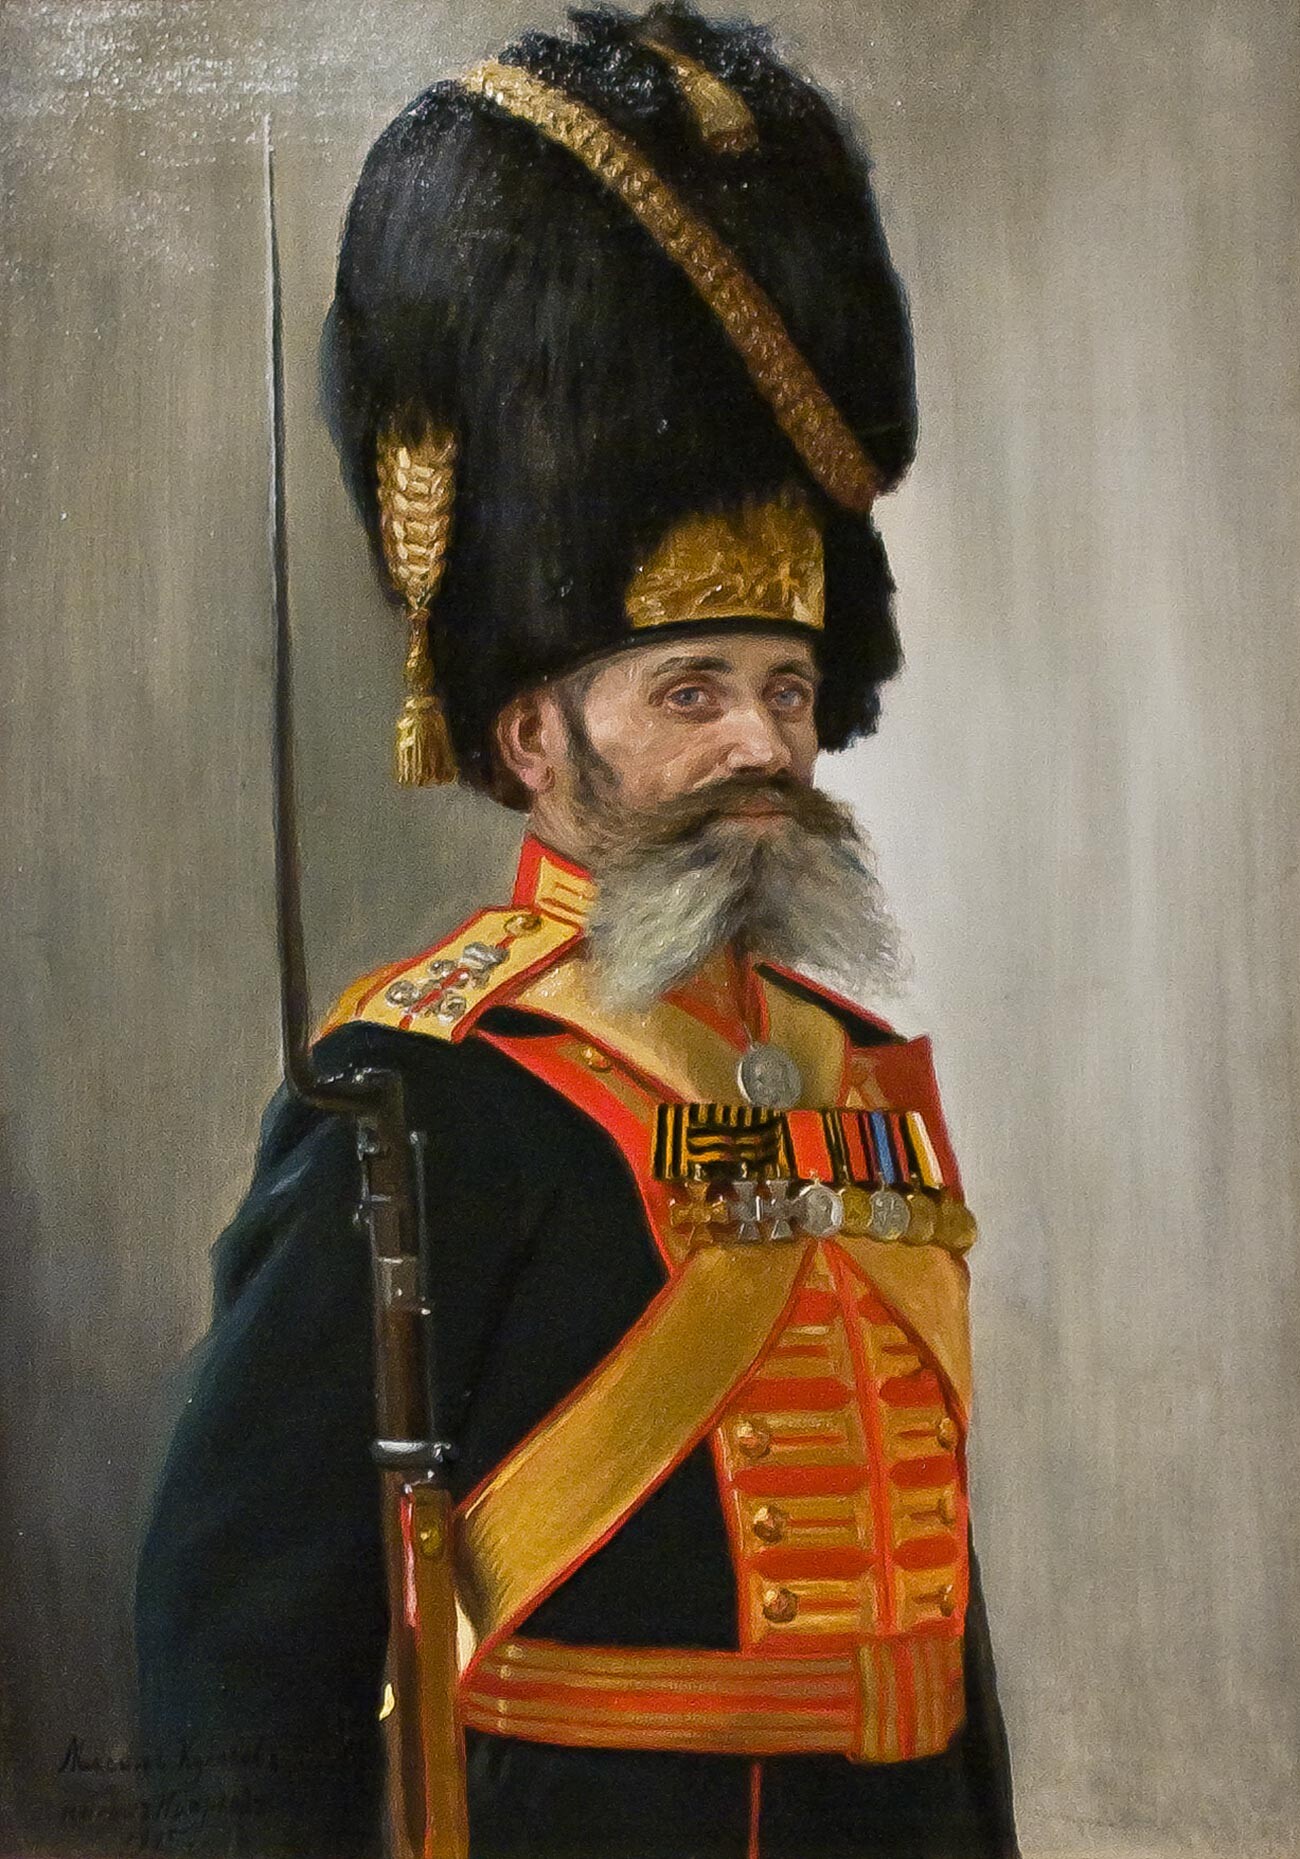 Porträt eines der Palast-Grenadiere, M. Kulakov, von Wladimir Pojarkow, 1915